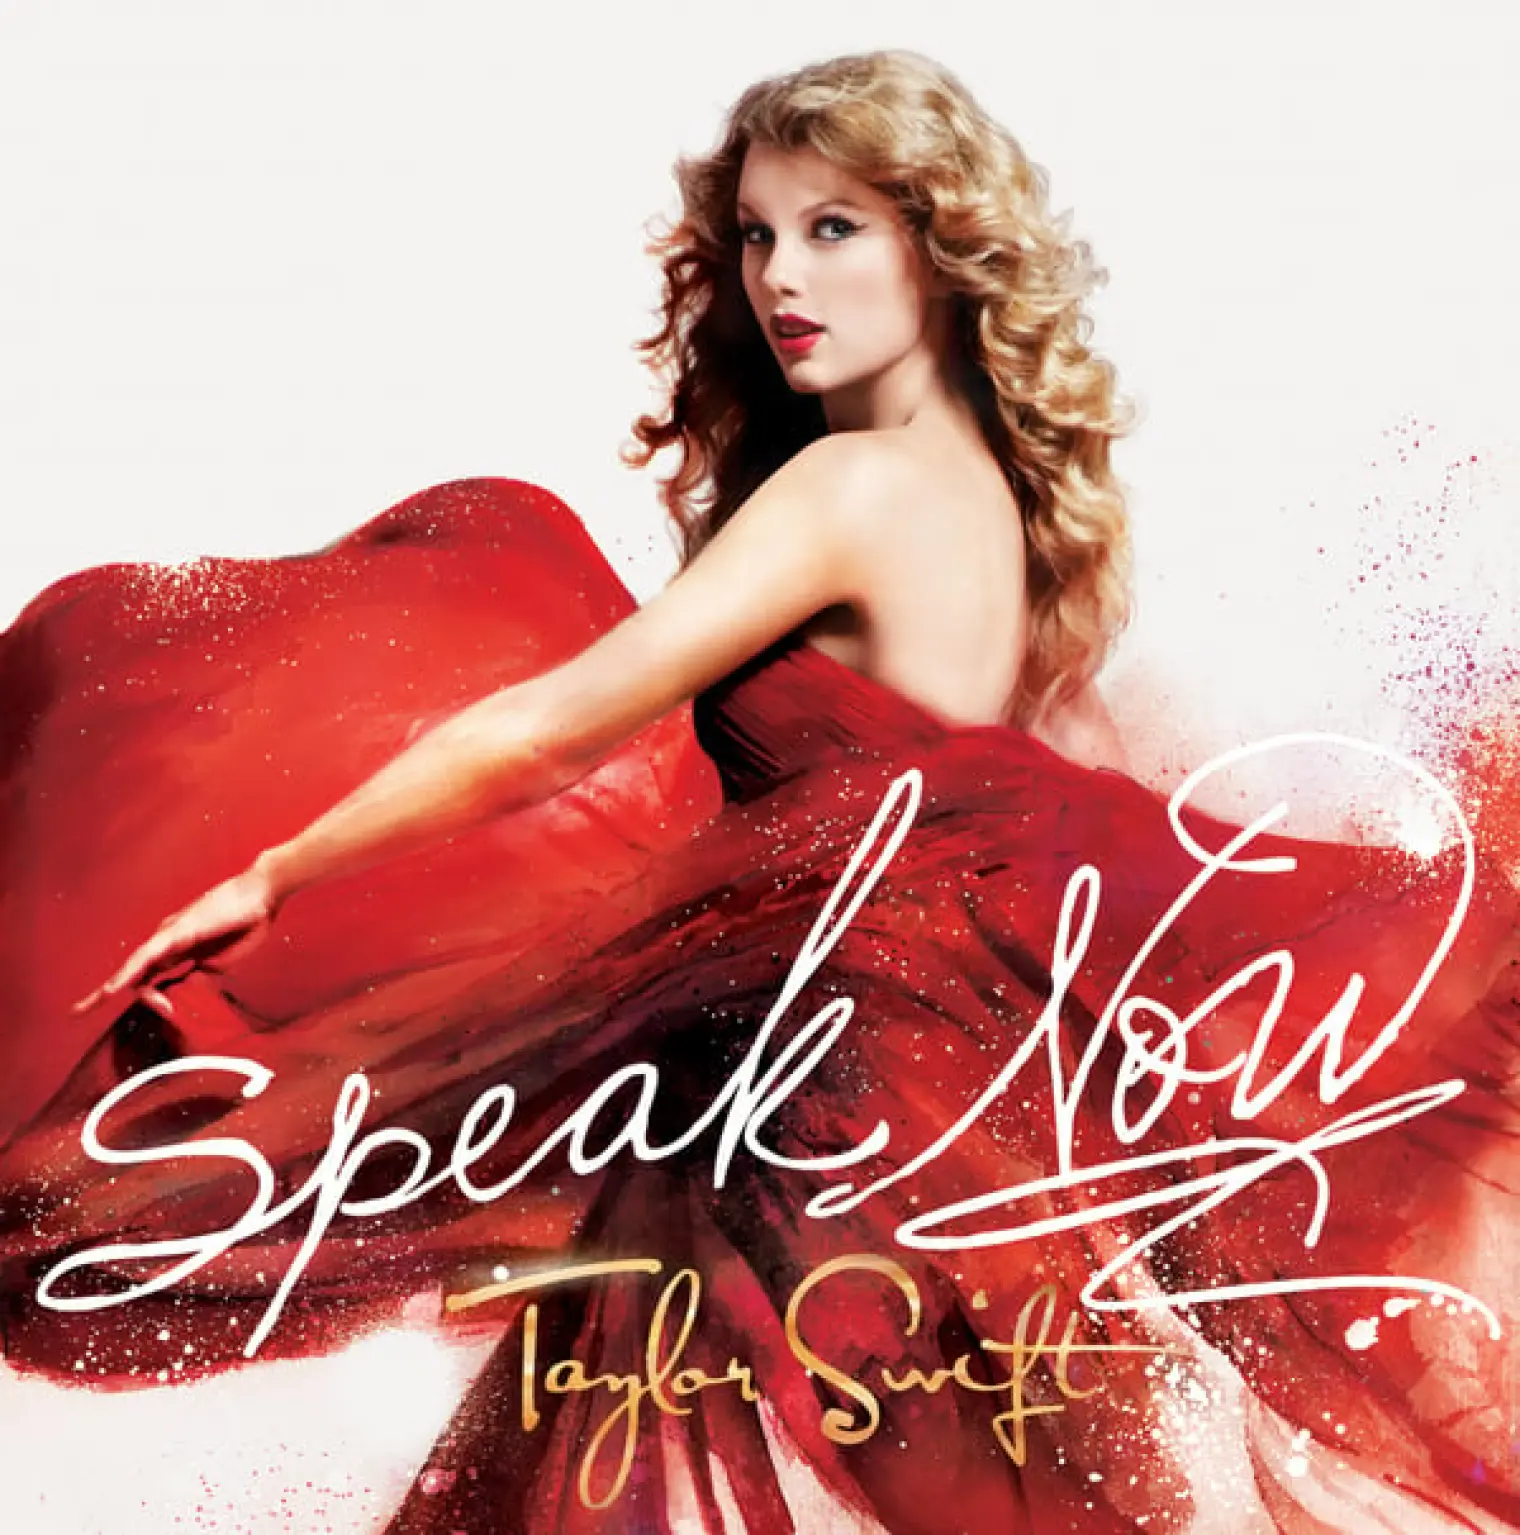 Speak Now -  Taylor Swift 